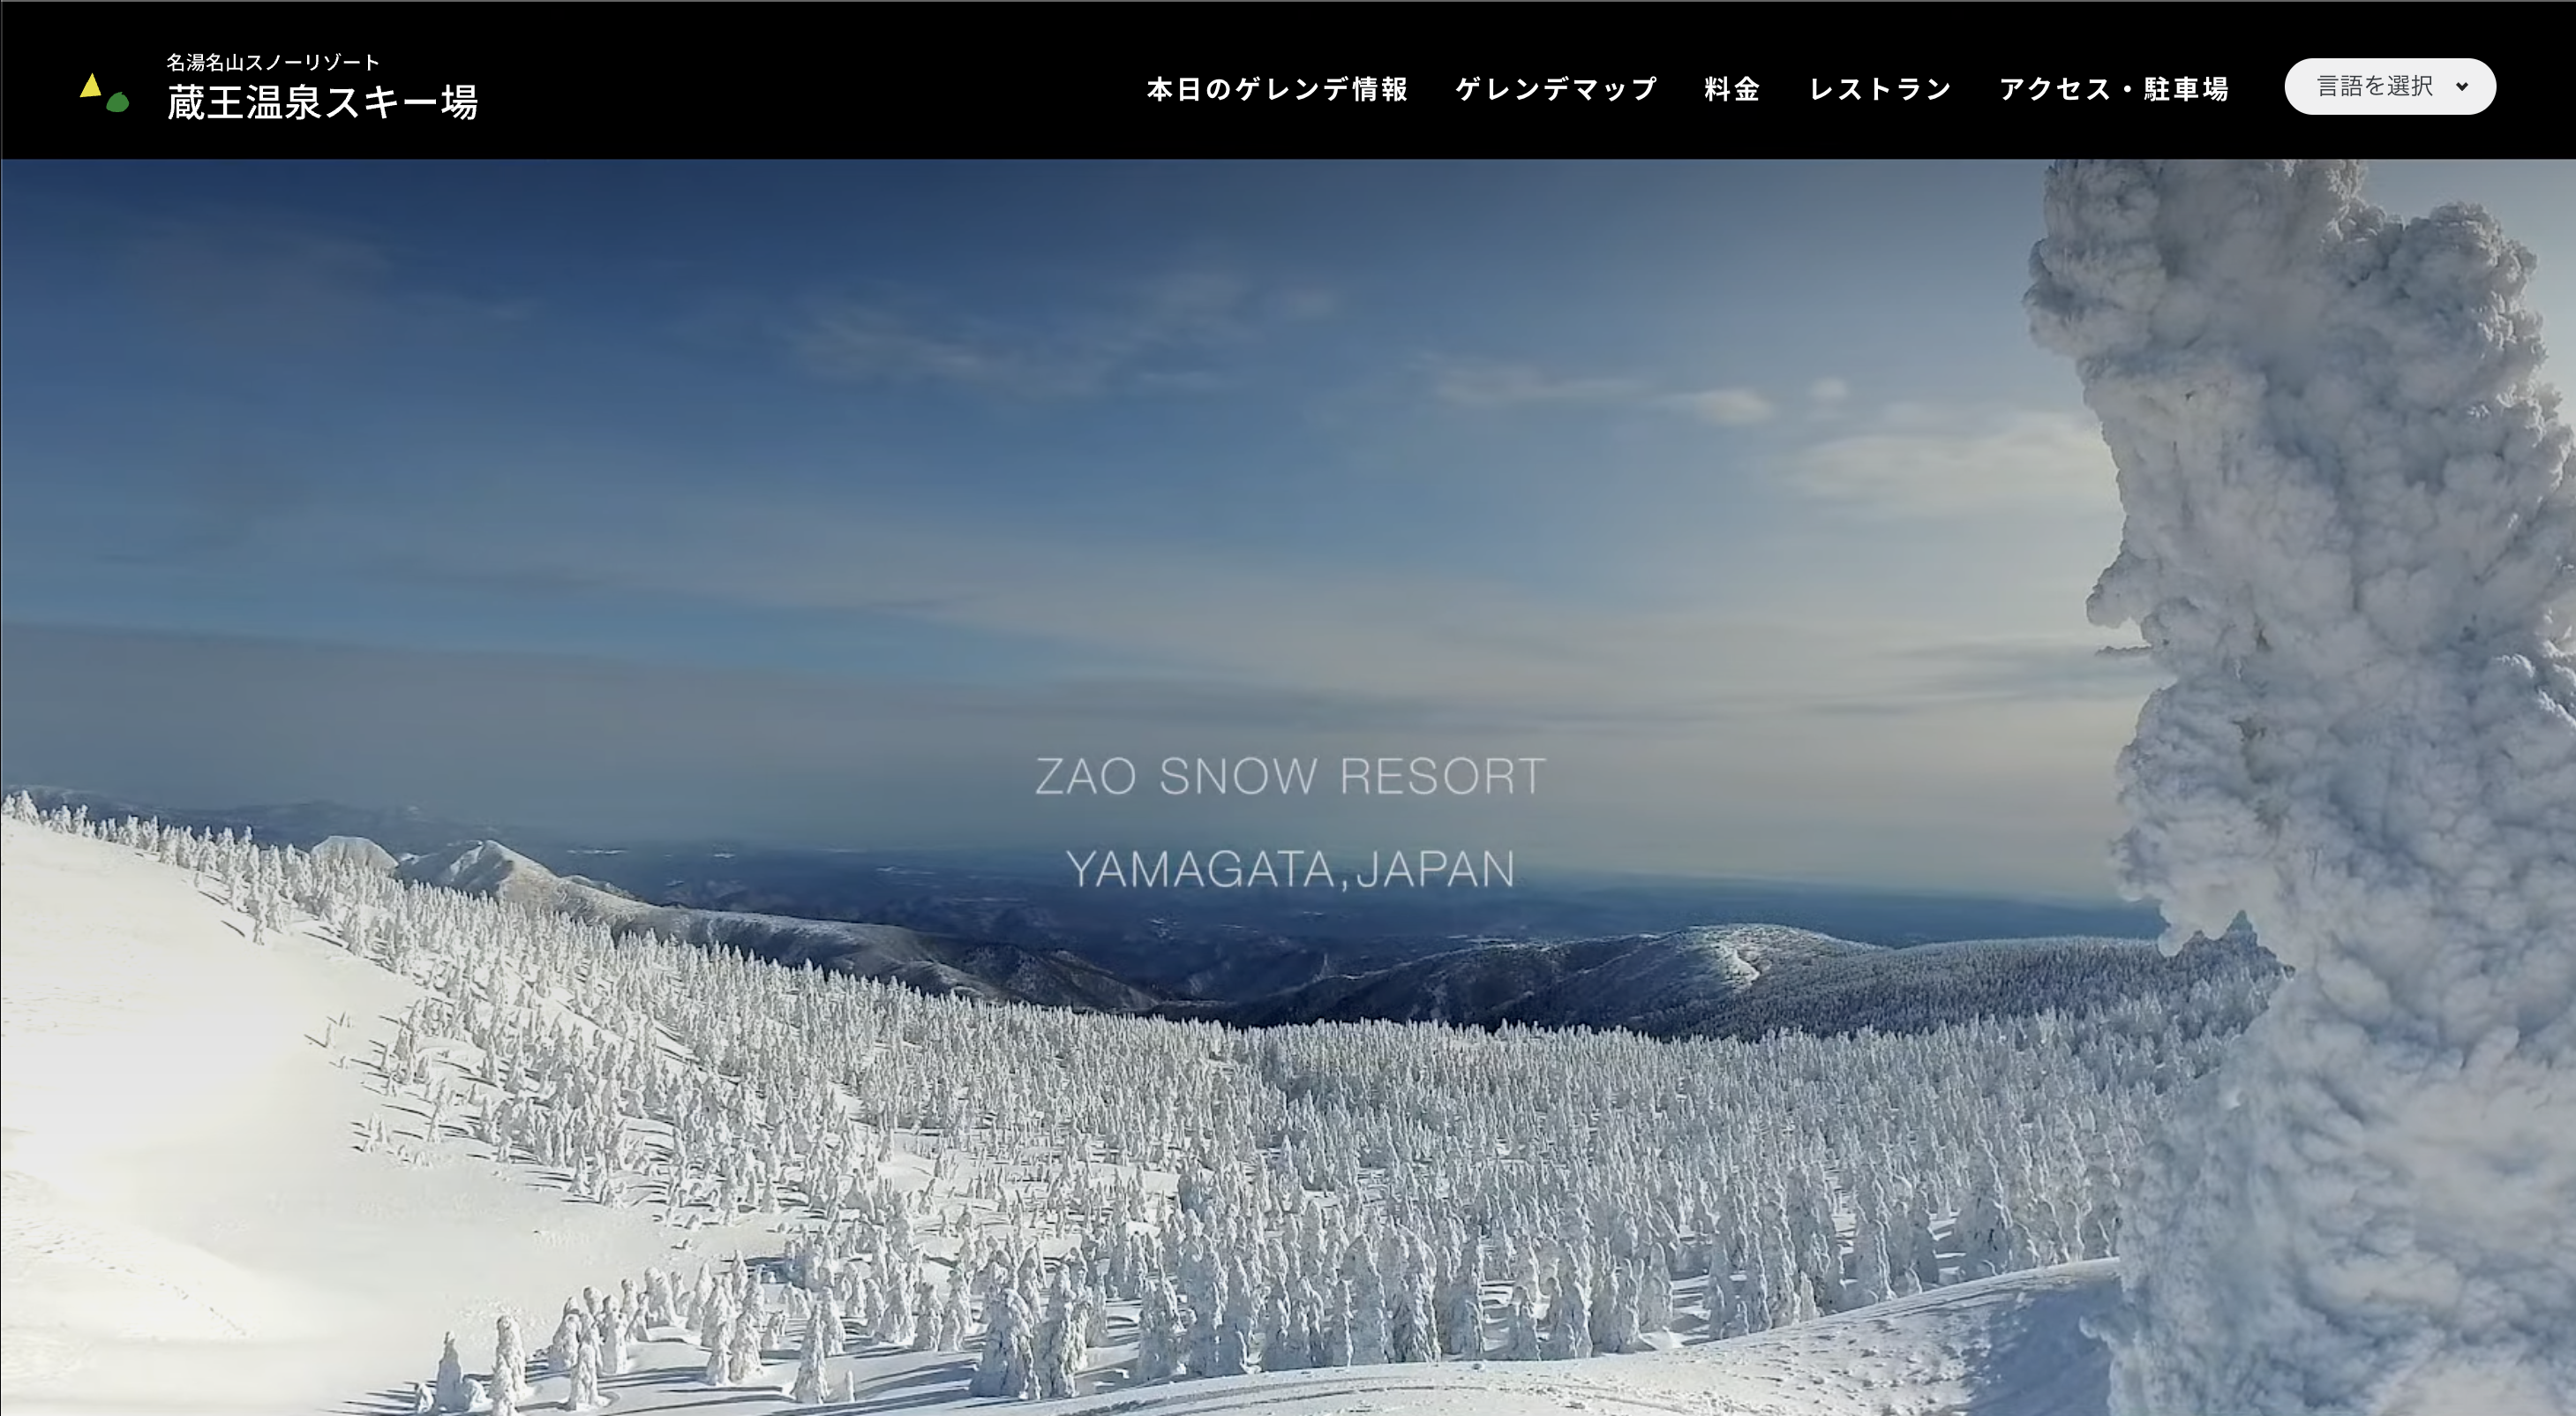 【山形オープン情報】蔵王温泉スキー場が12/10オープン予定です。